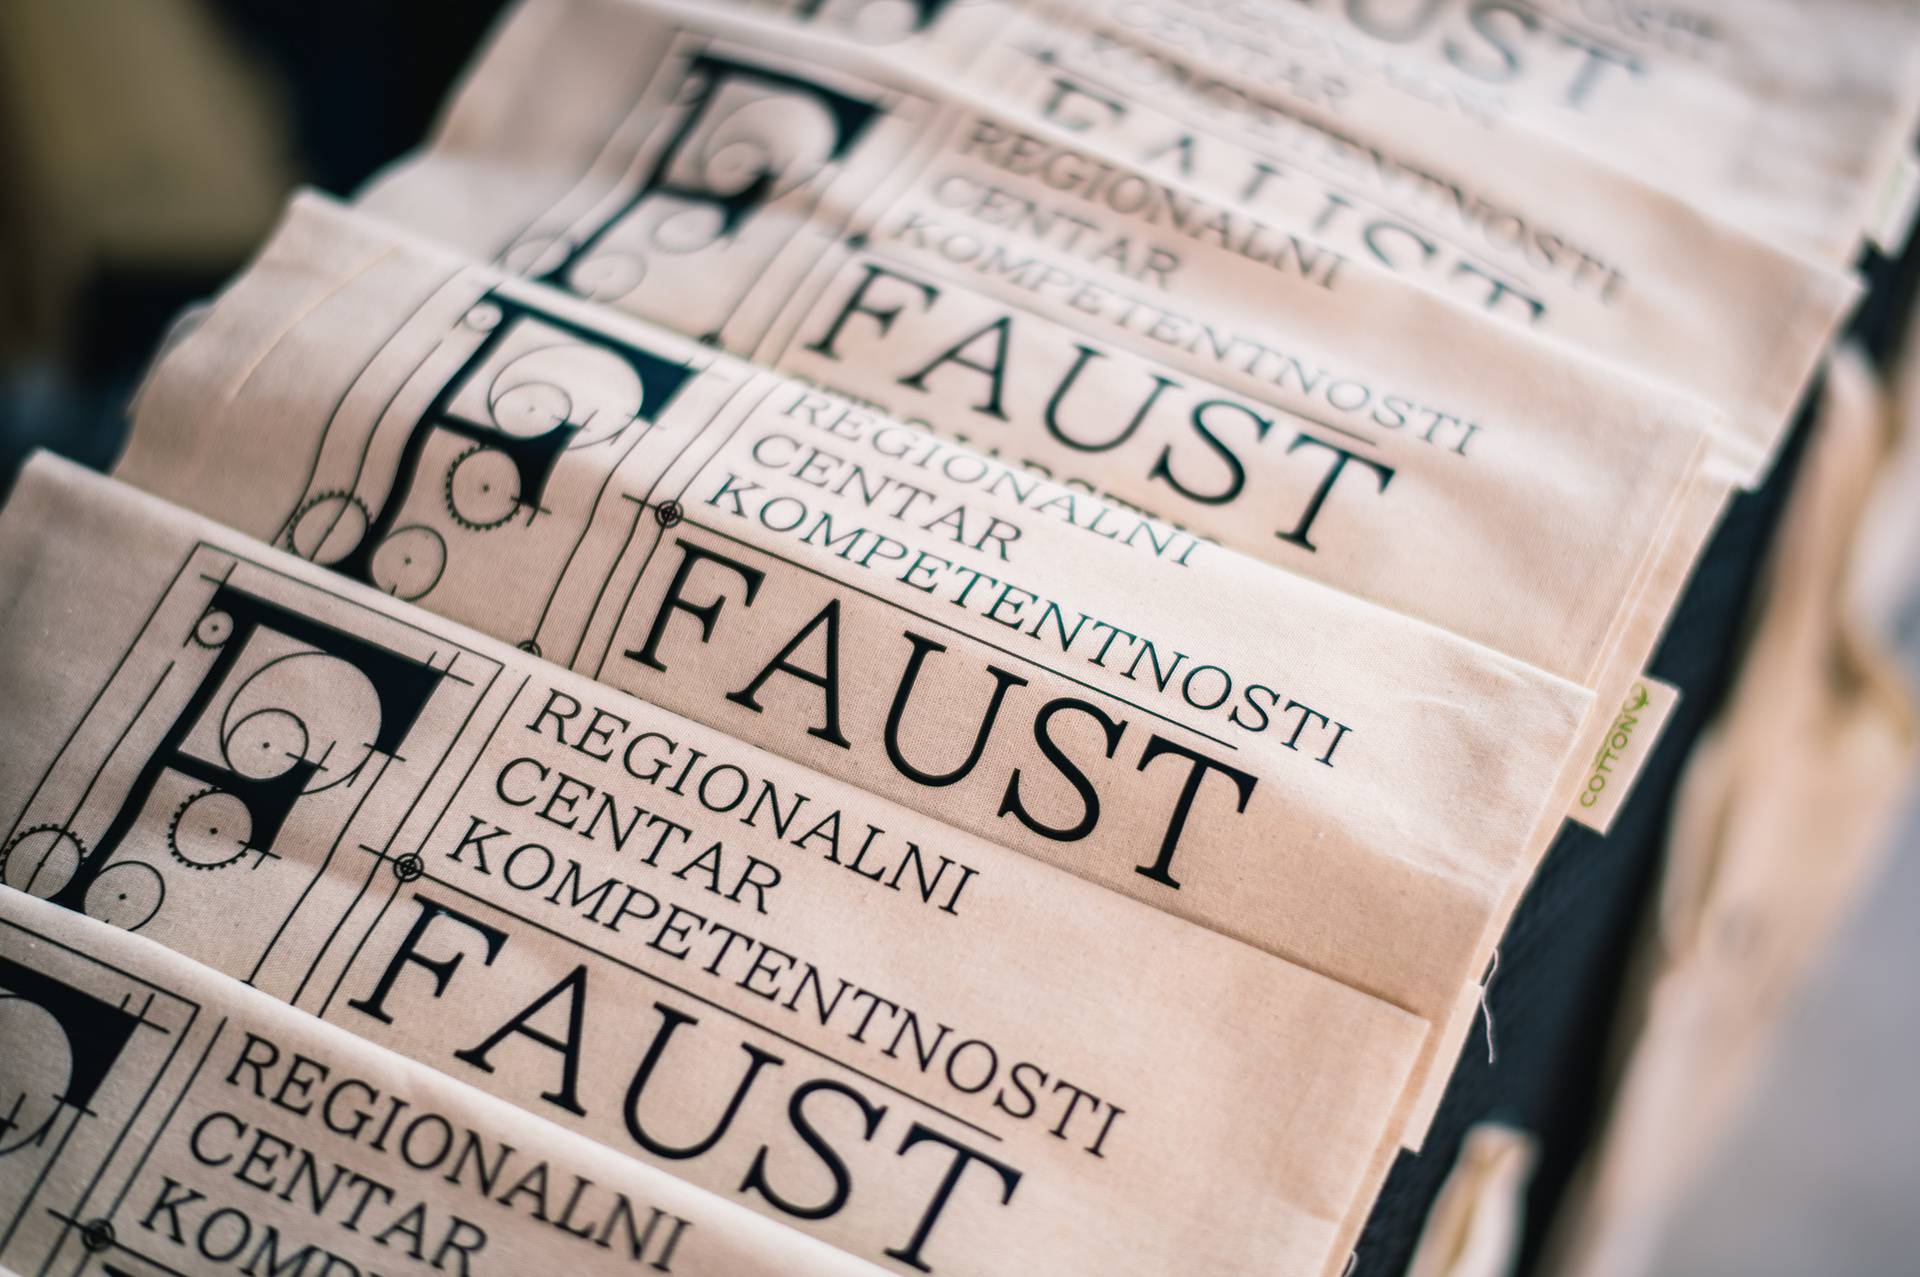 Održani prvi Dani otvorenih vrata RCK  Faust - strojarstvo